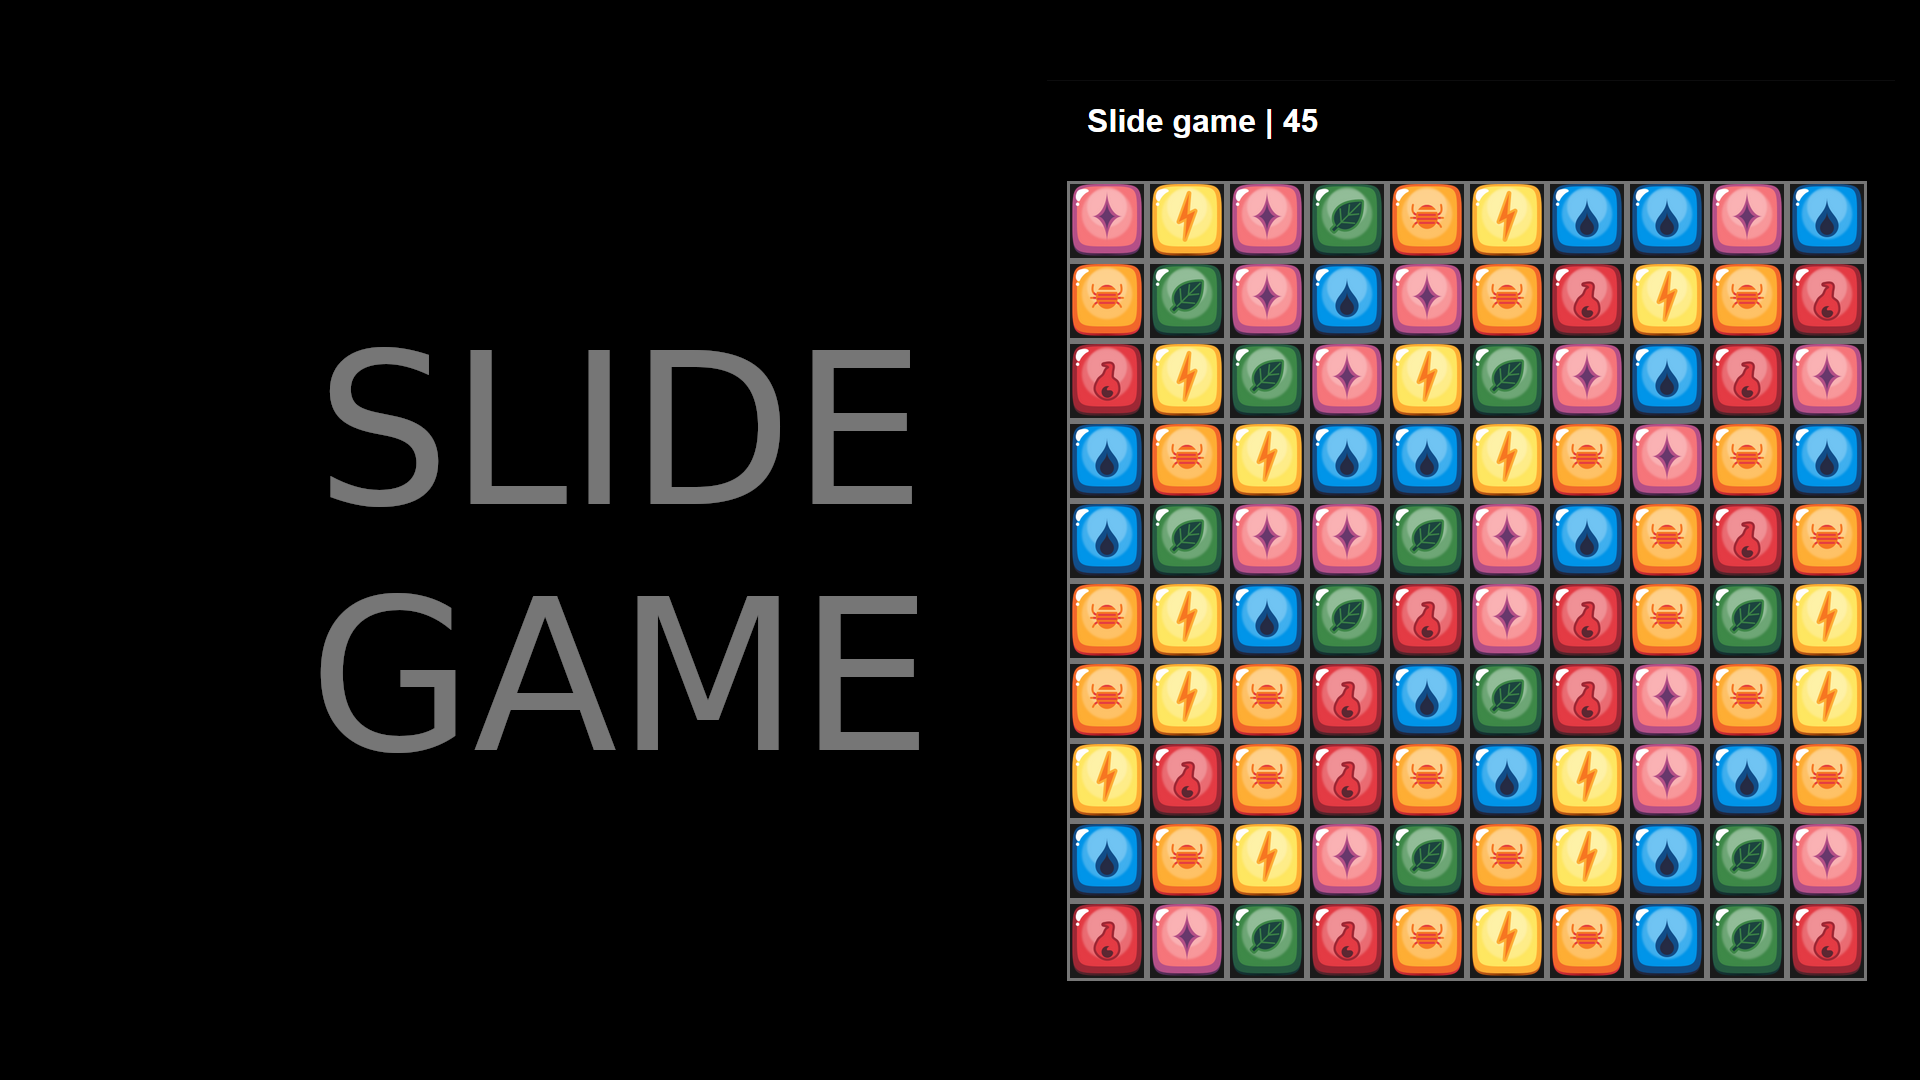 Slide game image